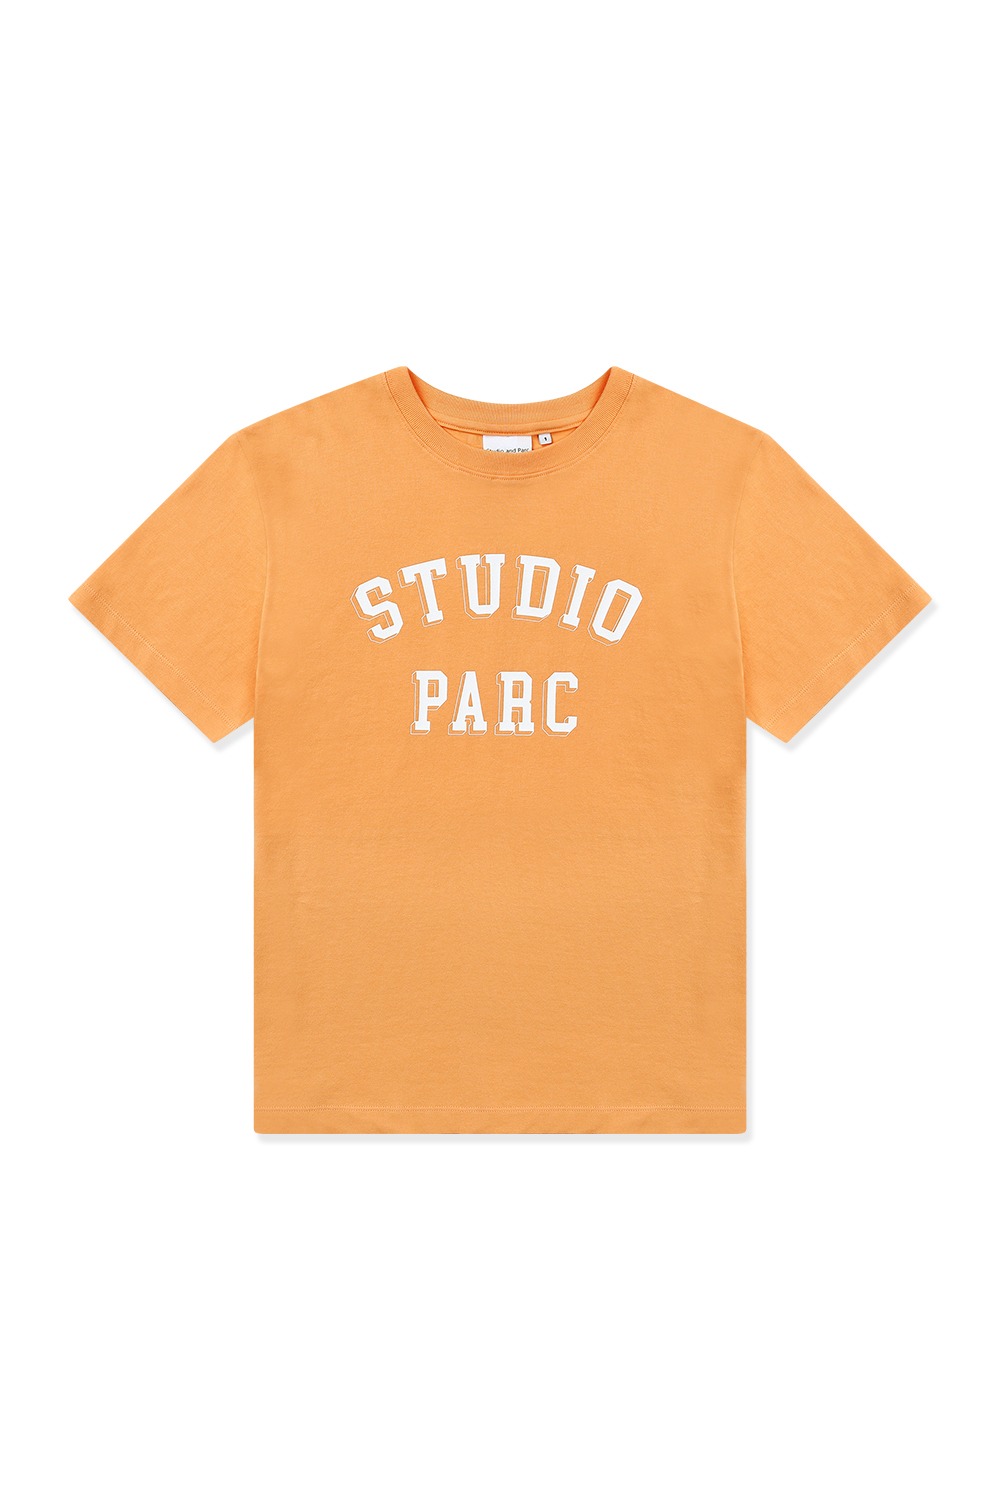 스튜디오파르크 티셔츠 (오렌지) - 리치즈 RICHEZ